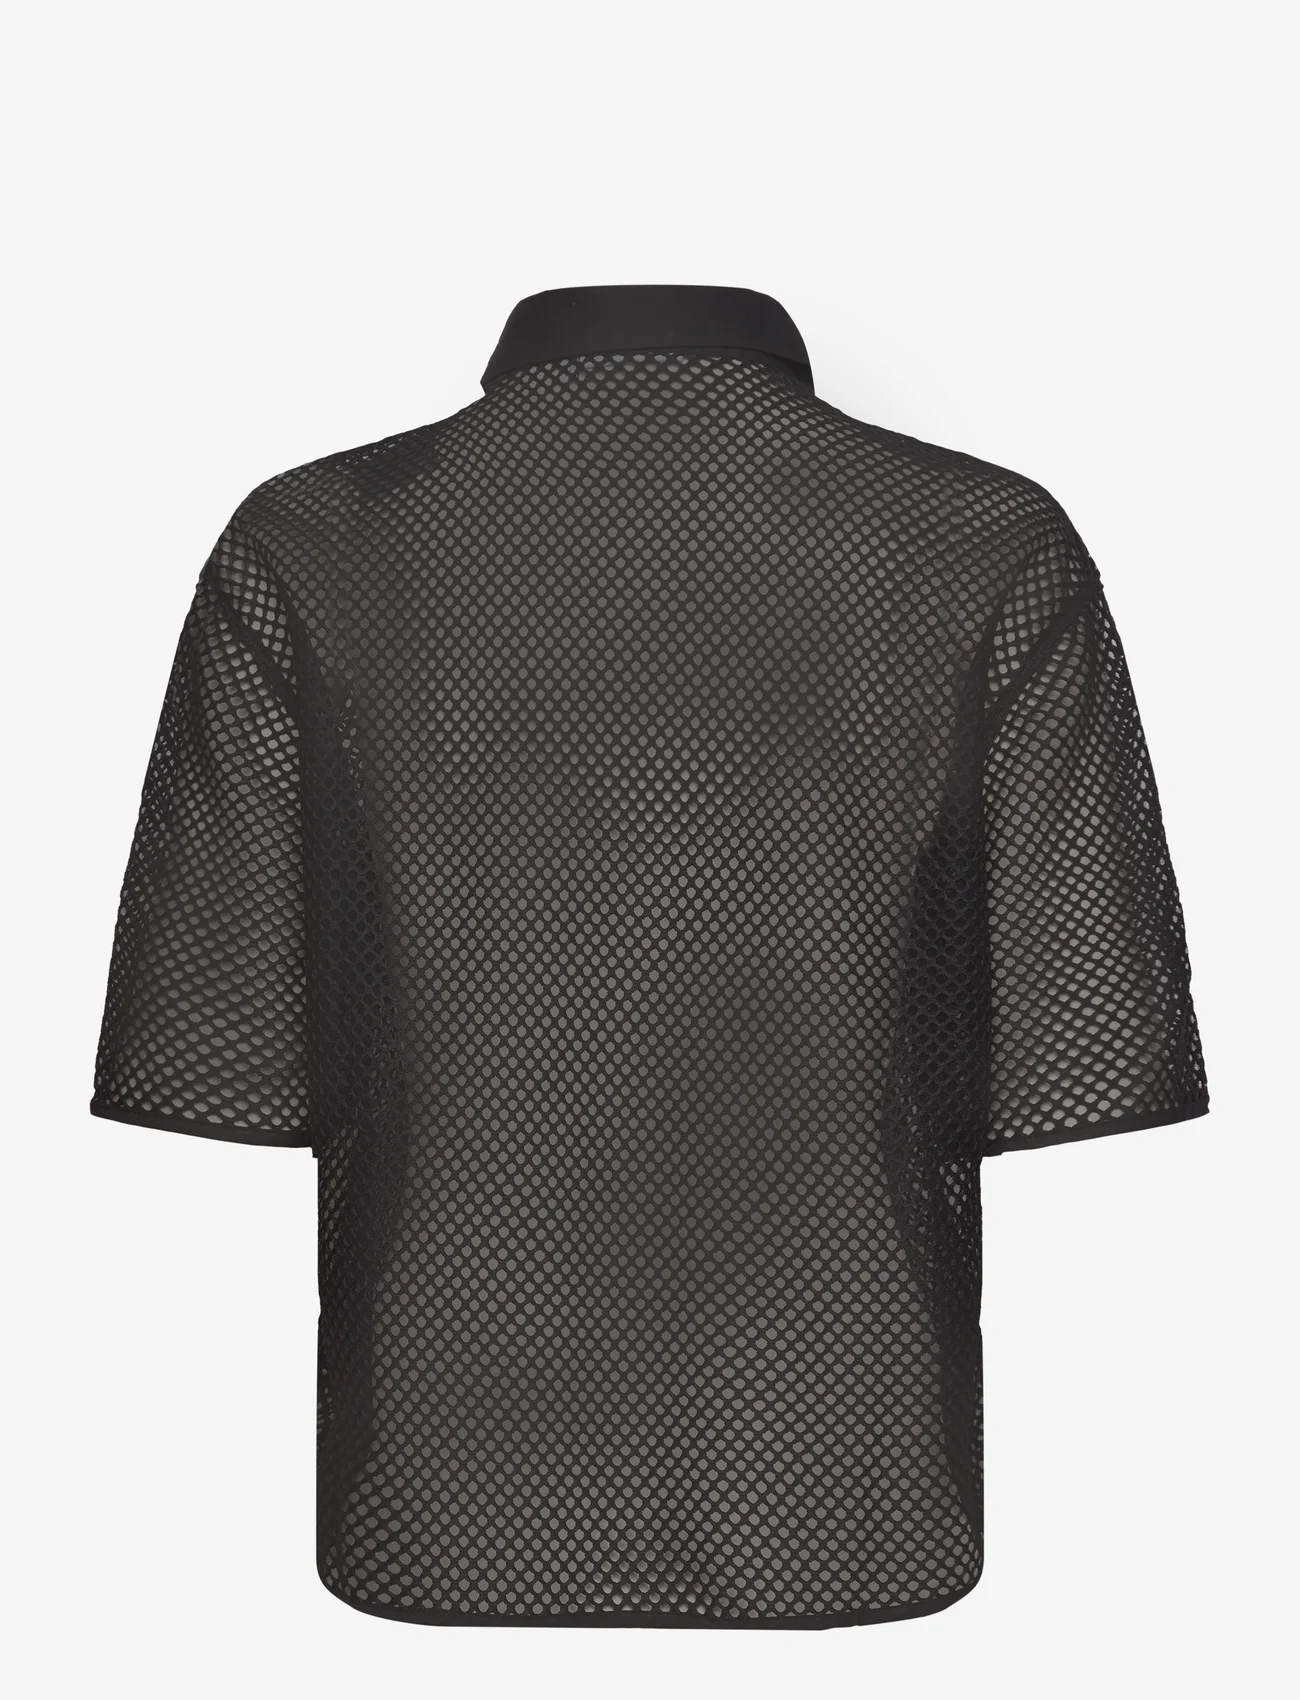 Coster Copenhagen - Mesh shirt - lühikeste varrukatega särgid - black - 1